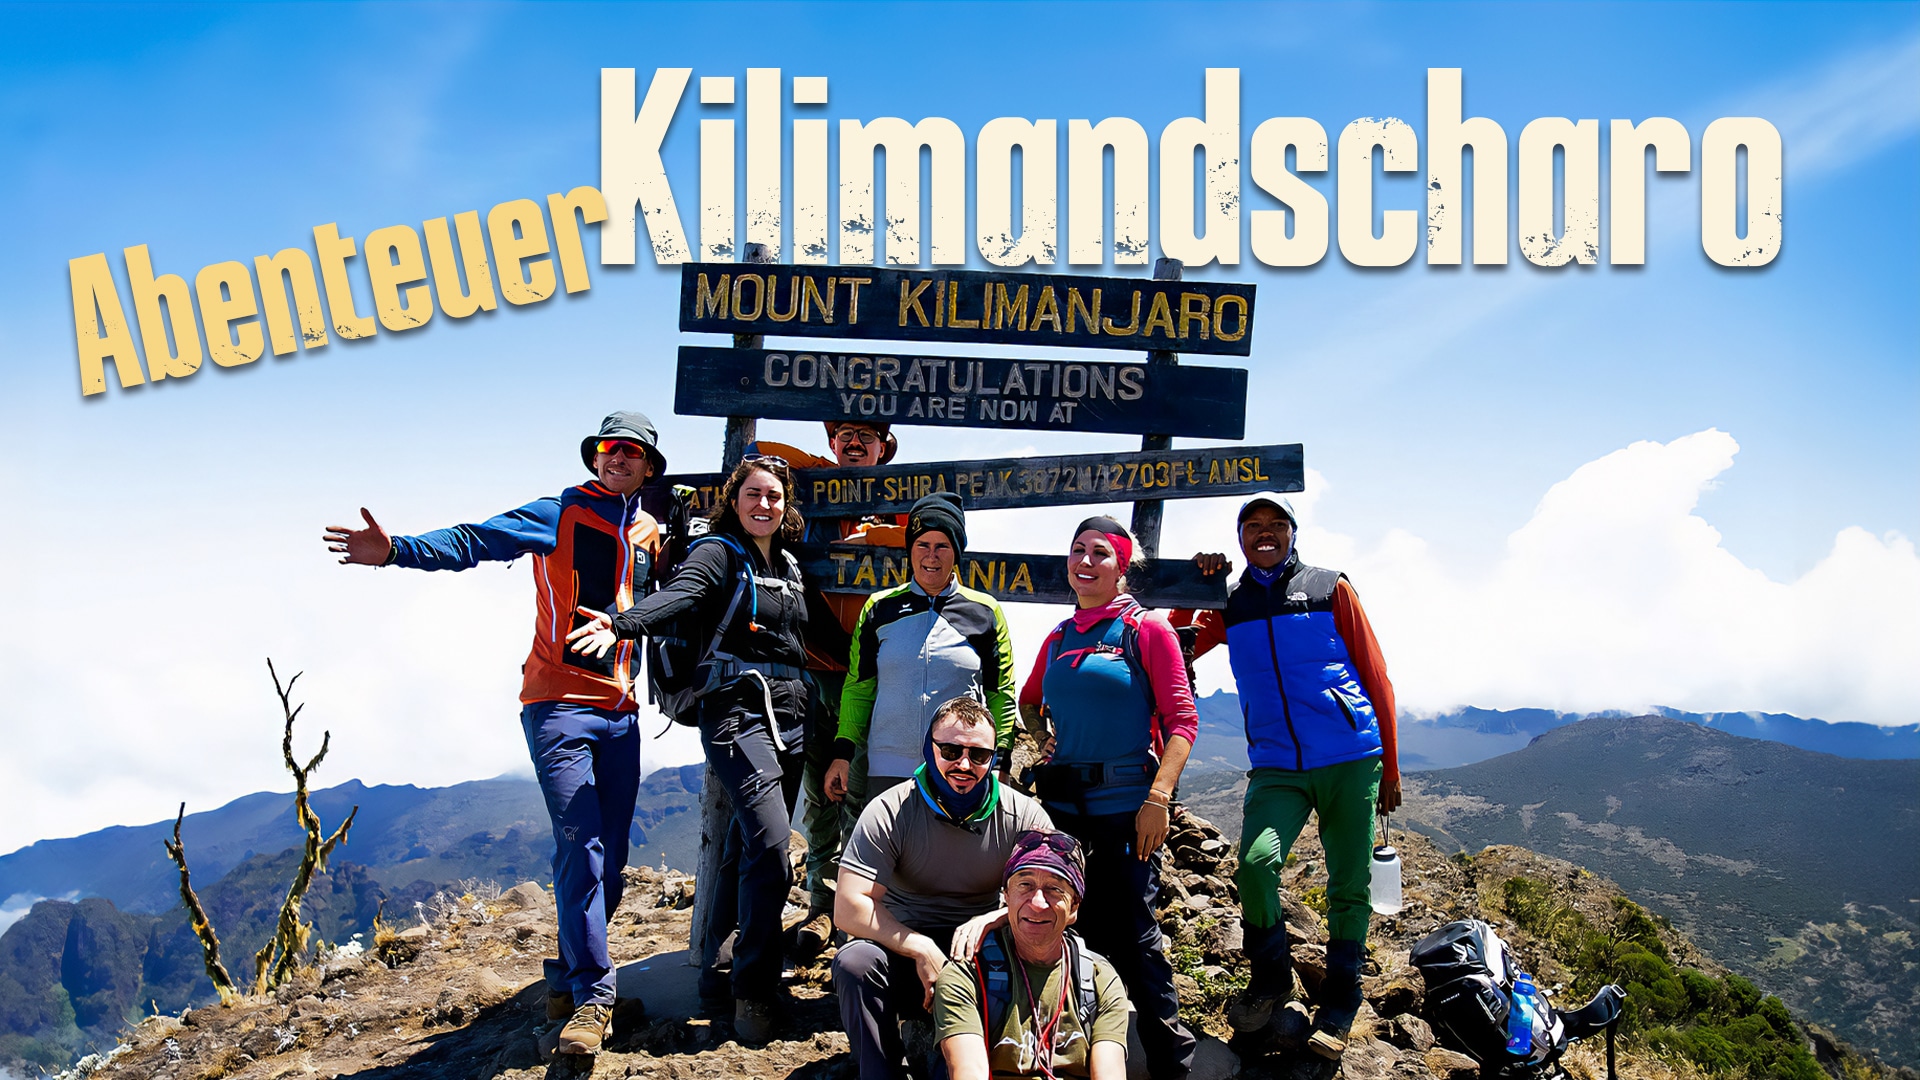 Abenteuer Kilimandscharo